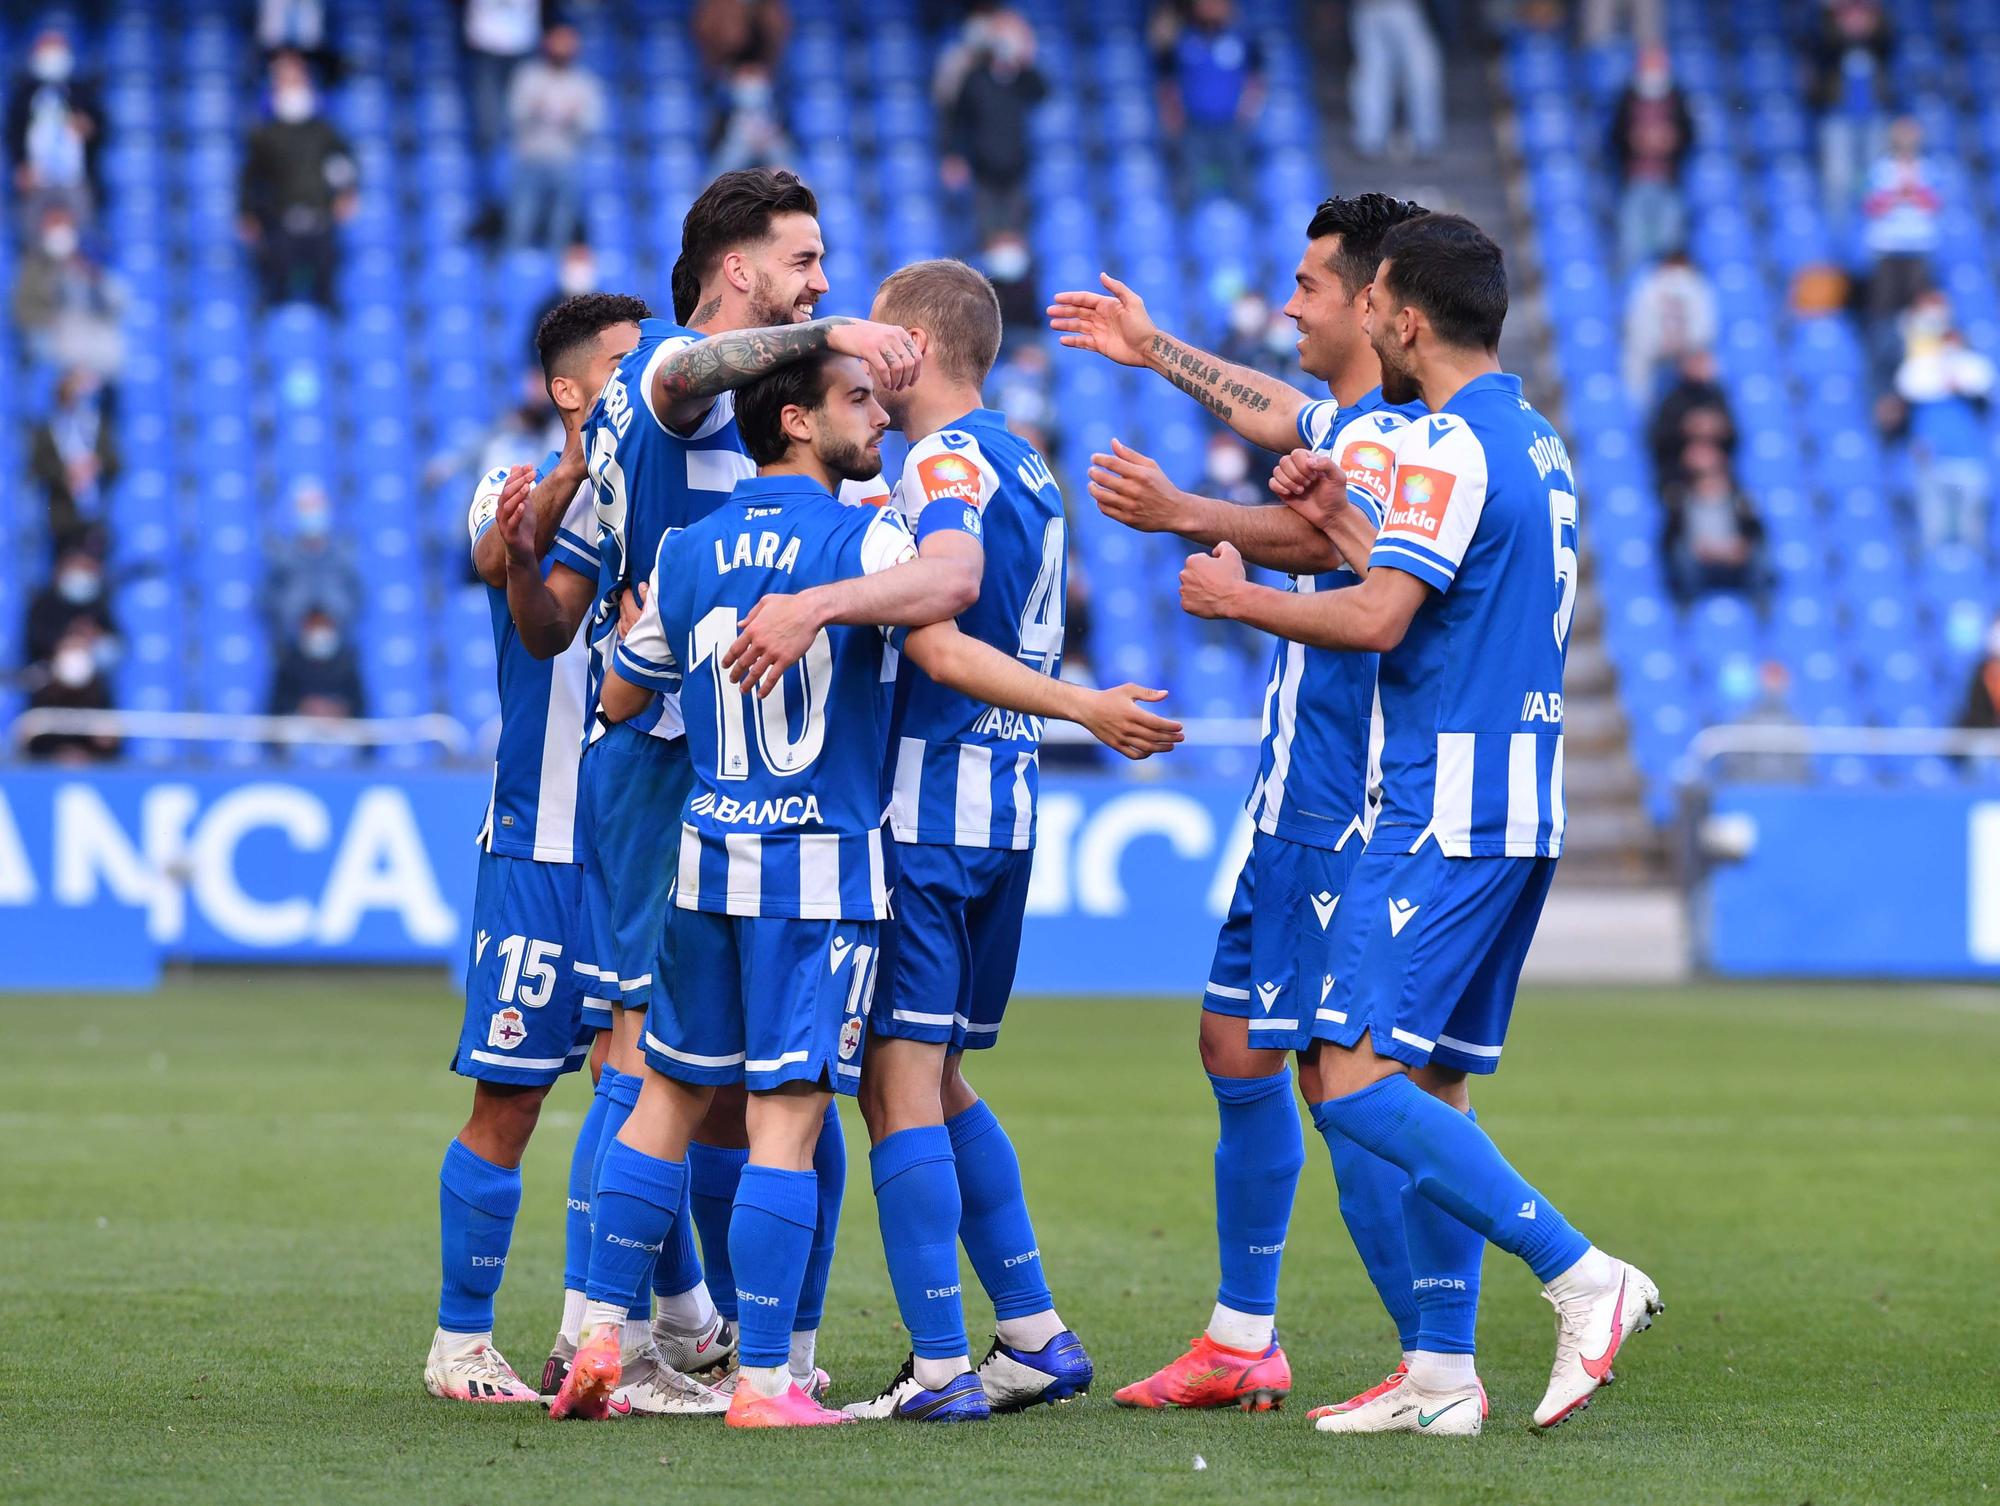 El Deportivo se libera con una goleada al Langreo (5-0)